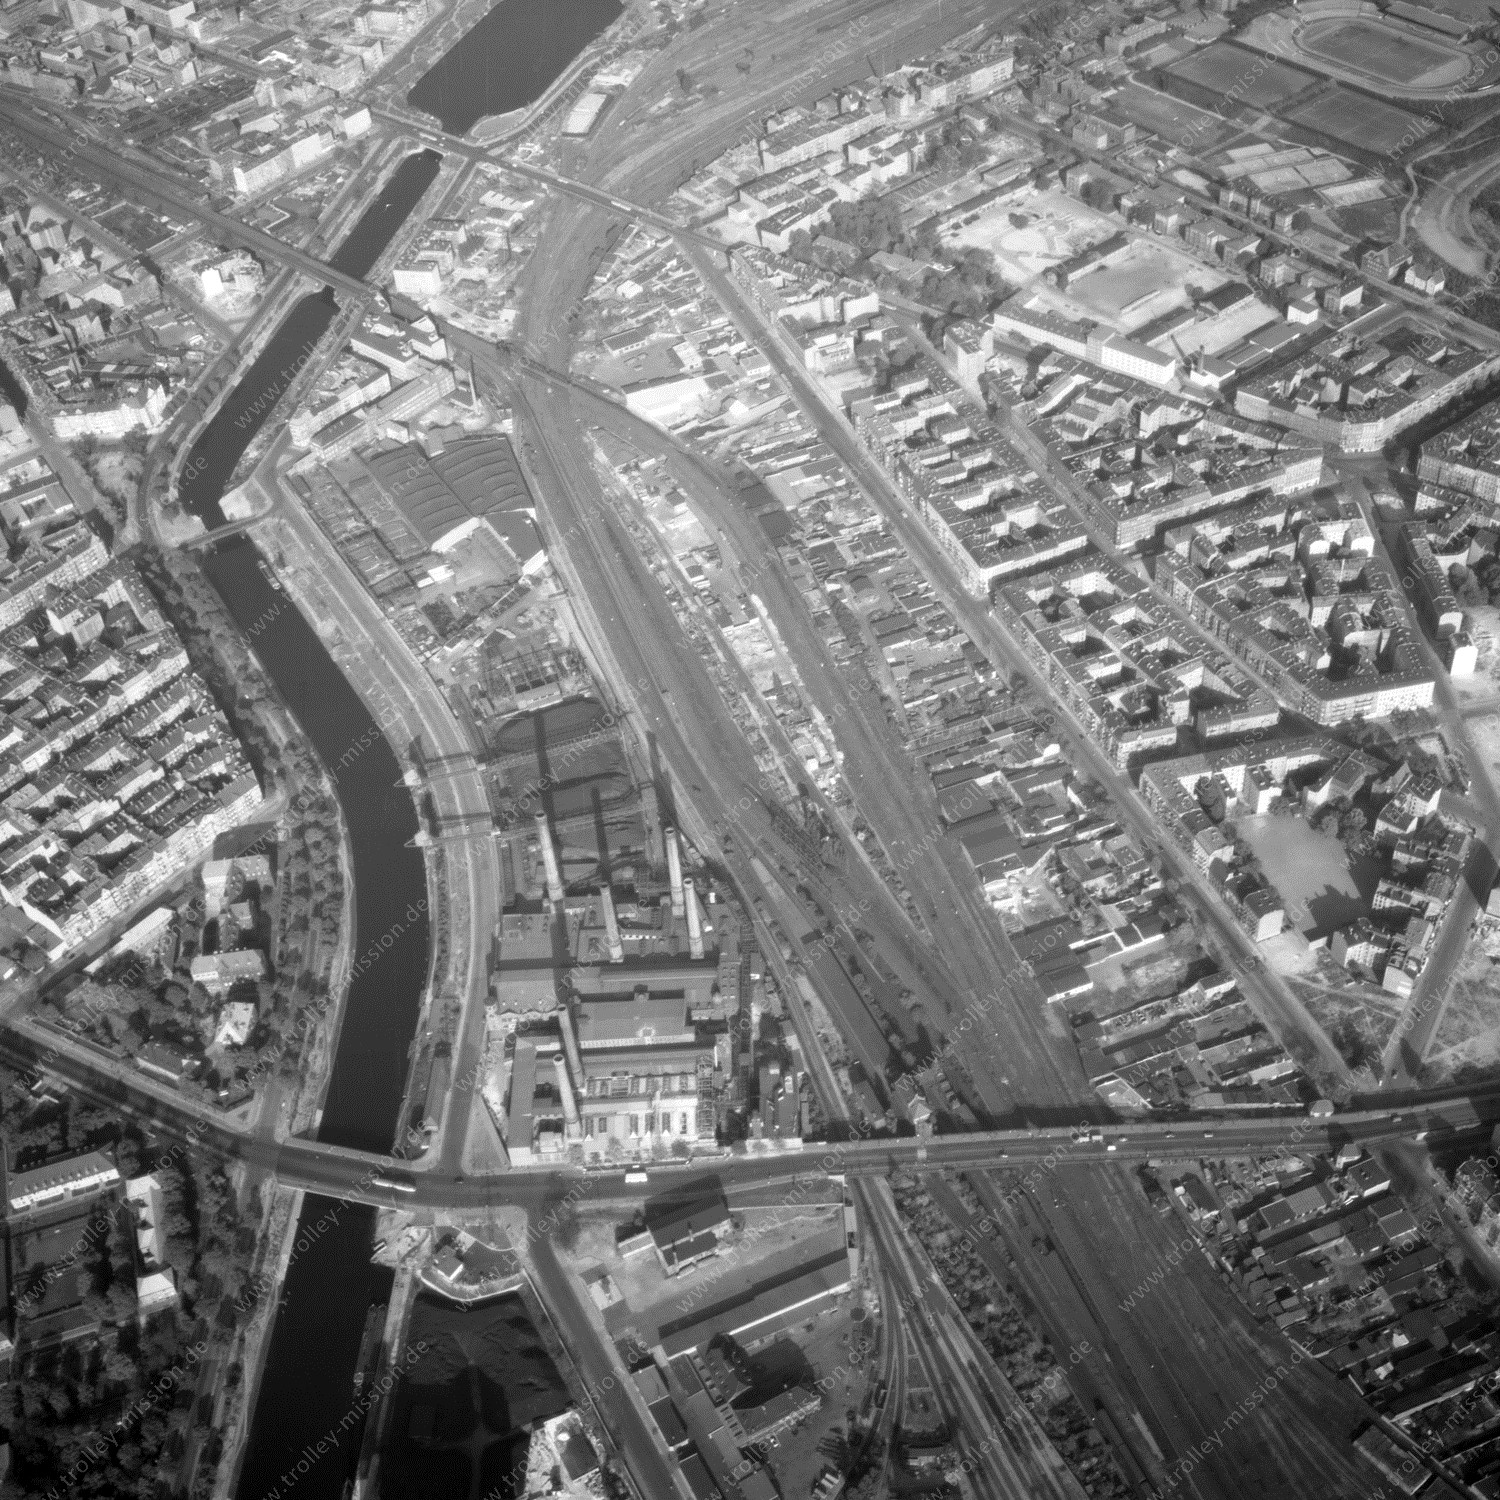 Alte Fotos und Luftbilder von Berlin - Luftbildaufnahme Nr. 05 - Historische Luftaufnahmen von West-Berlin aus dem Jahr 1954 - Flugstrecke Oscar